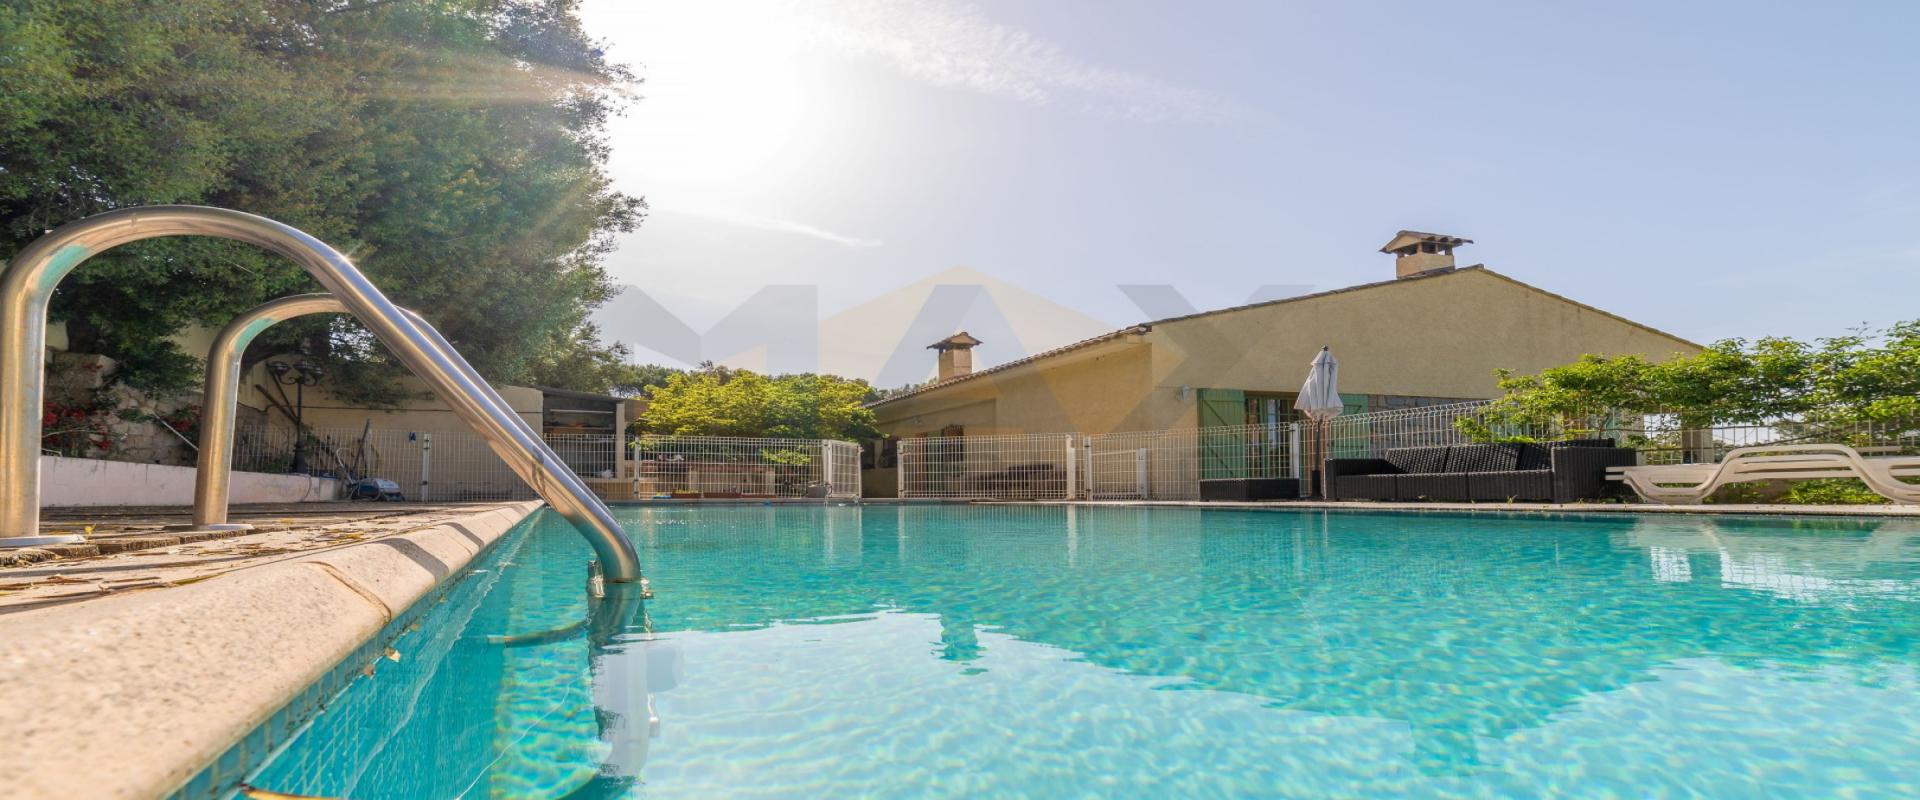 En Corse, à Ajaccio, vente d'une villa de 350 m² avec piscine et vue mer